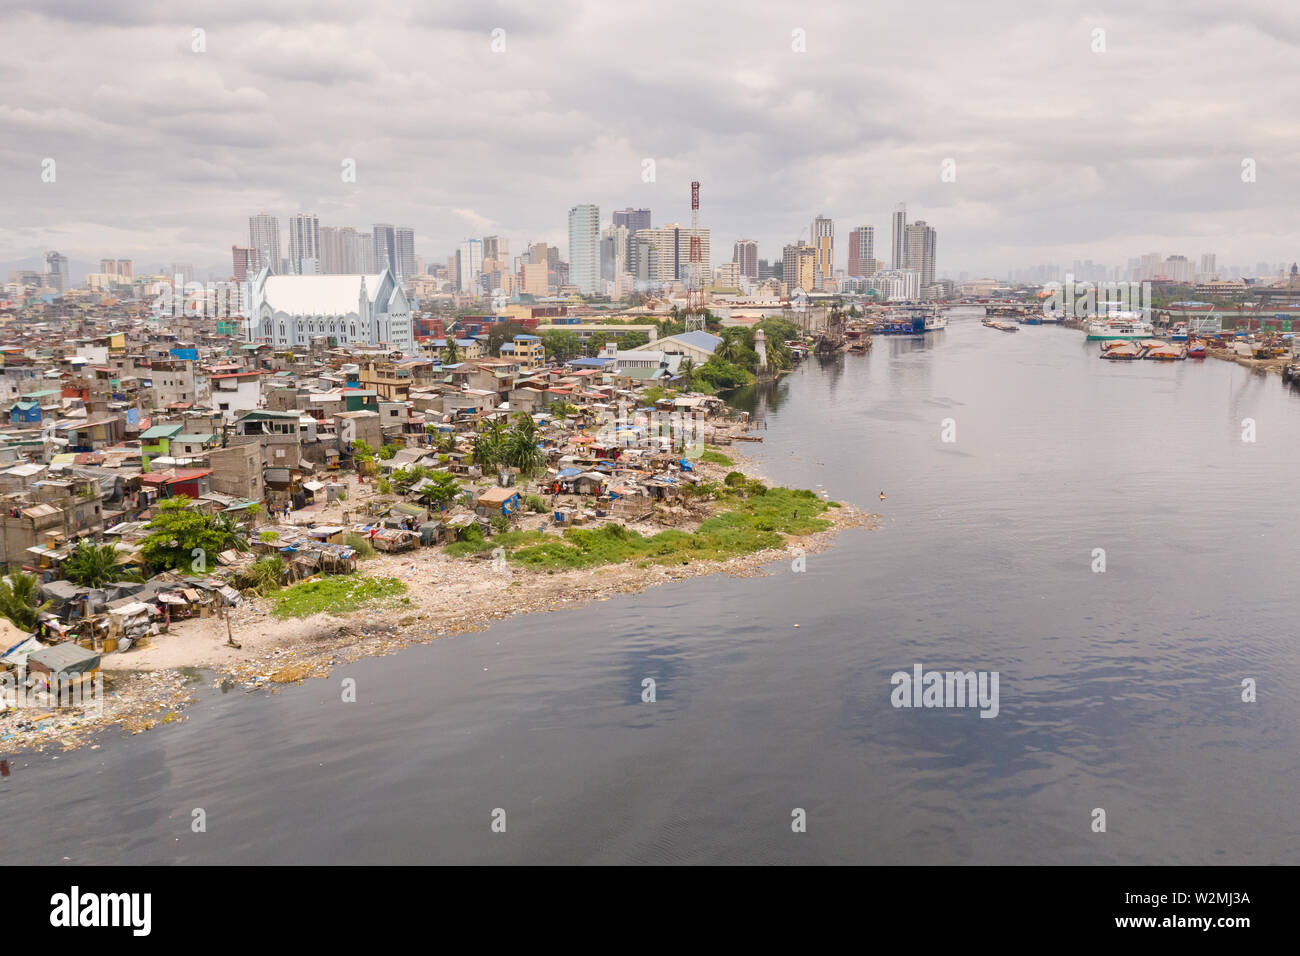 Le paysage urbain de Manille, avec des bidonvilles et des gratte-ciel. Port de mer et les zones résidentielles. Le contraste des zones riches et pauvres. La capitale des Philippines, vue de dessus. Banque D'Images